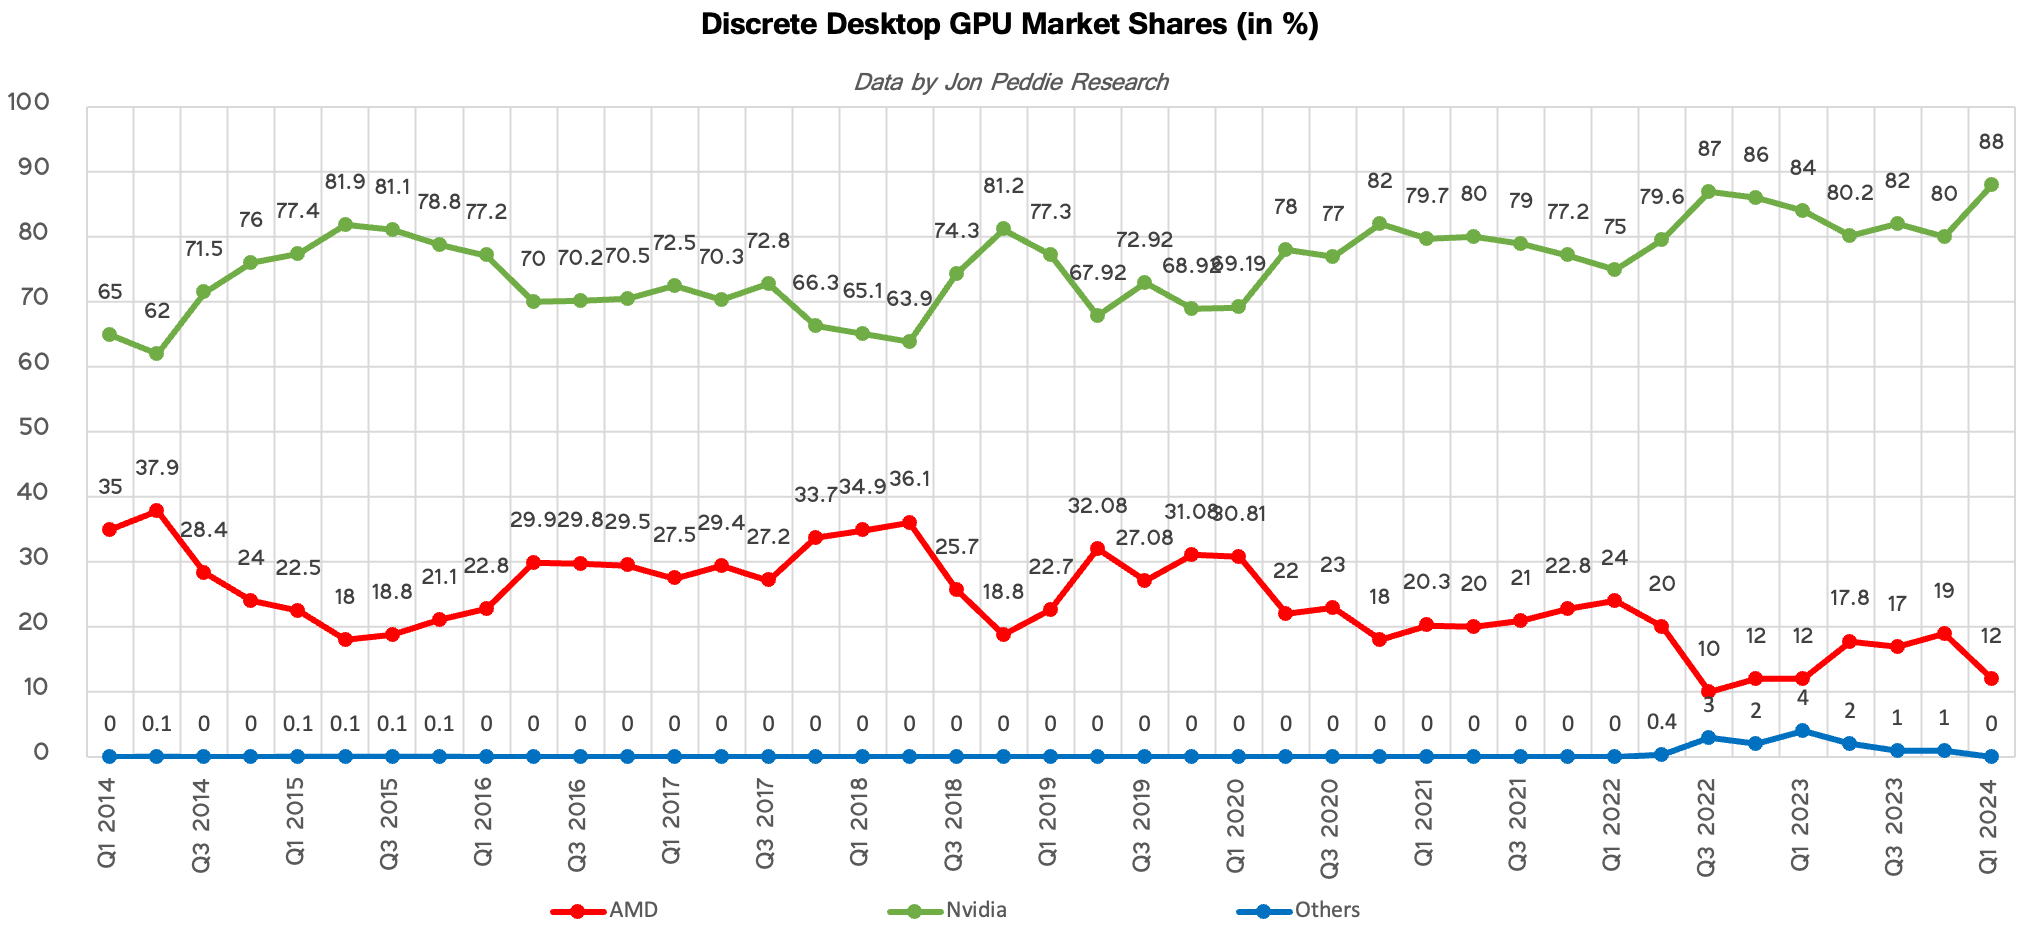 Pars de marché AMD / NVIDIA GPU dédiés desktop depuis 2014 [cliquer pour agrandir]